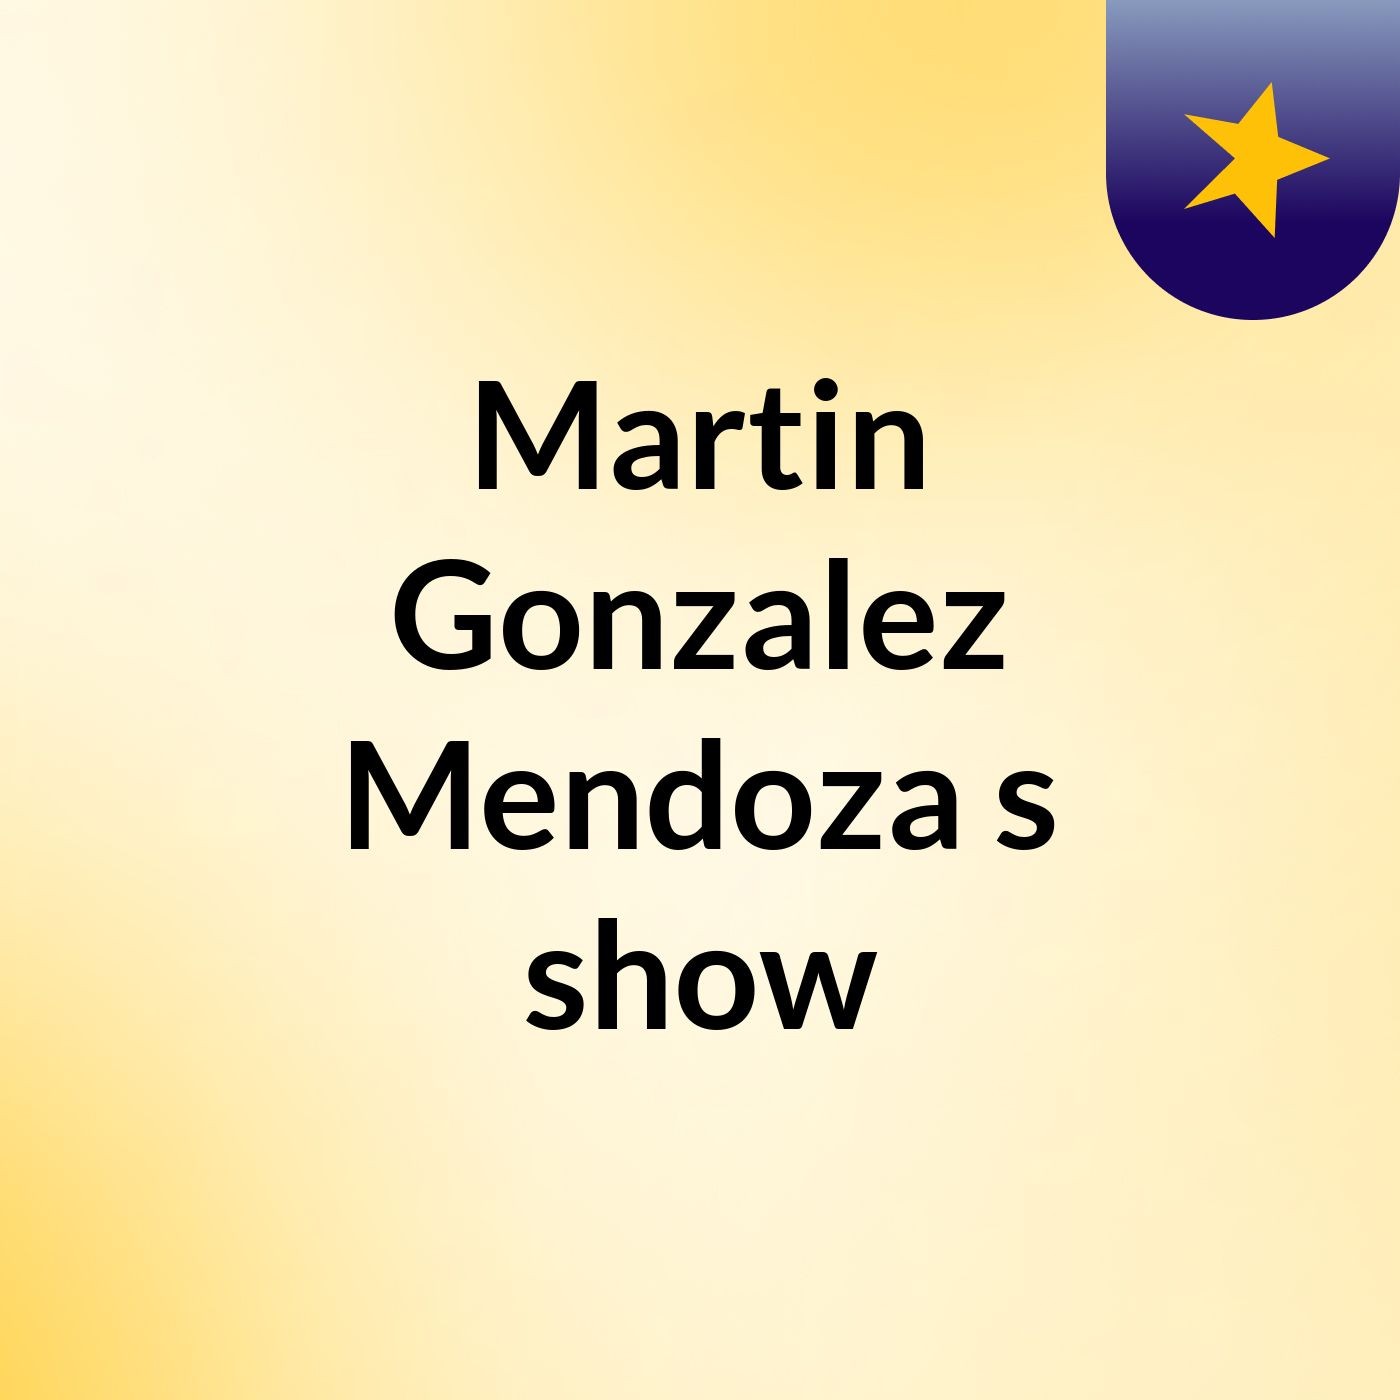 Martin Gonzalez Mendoza's show